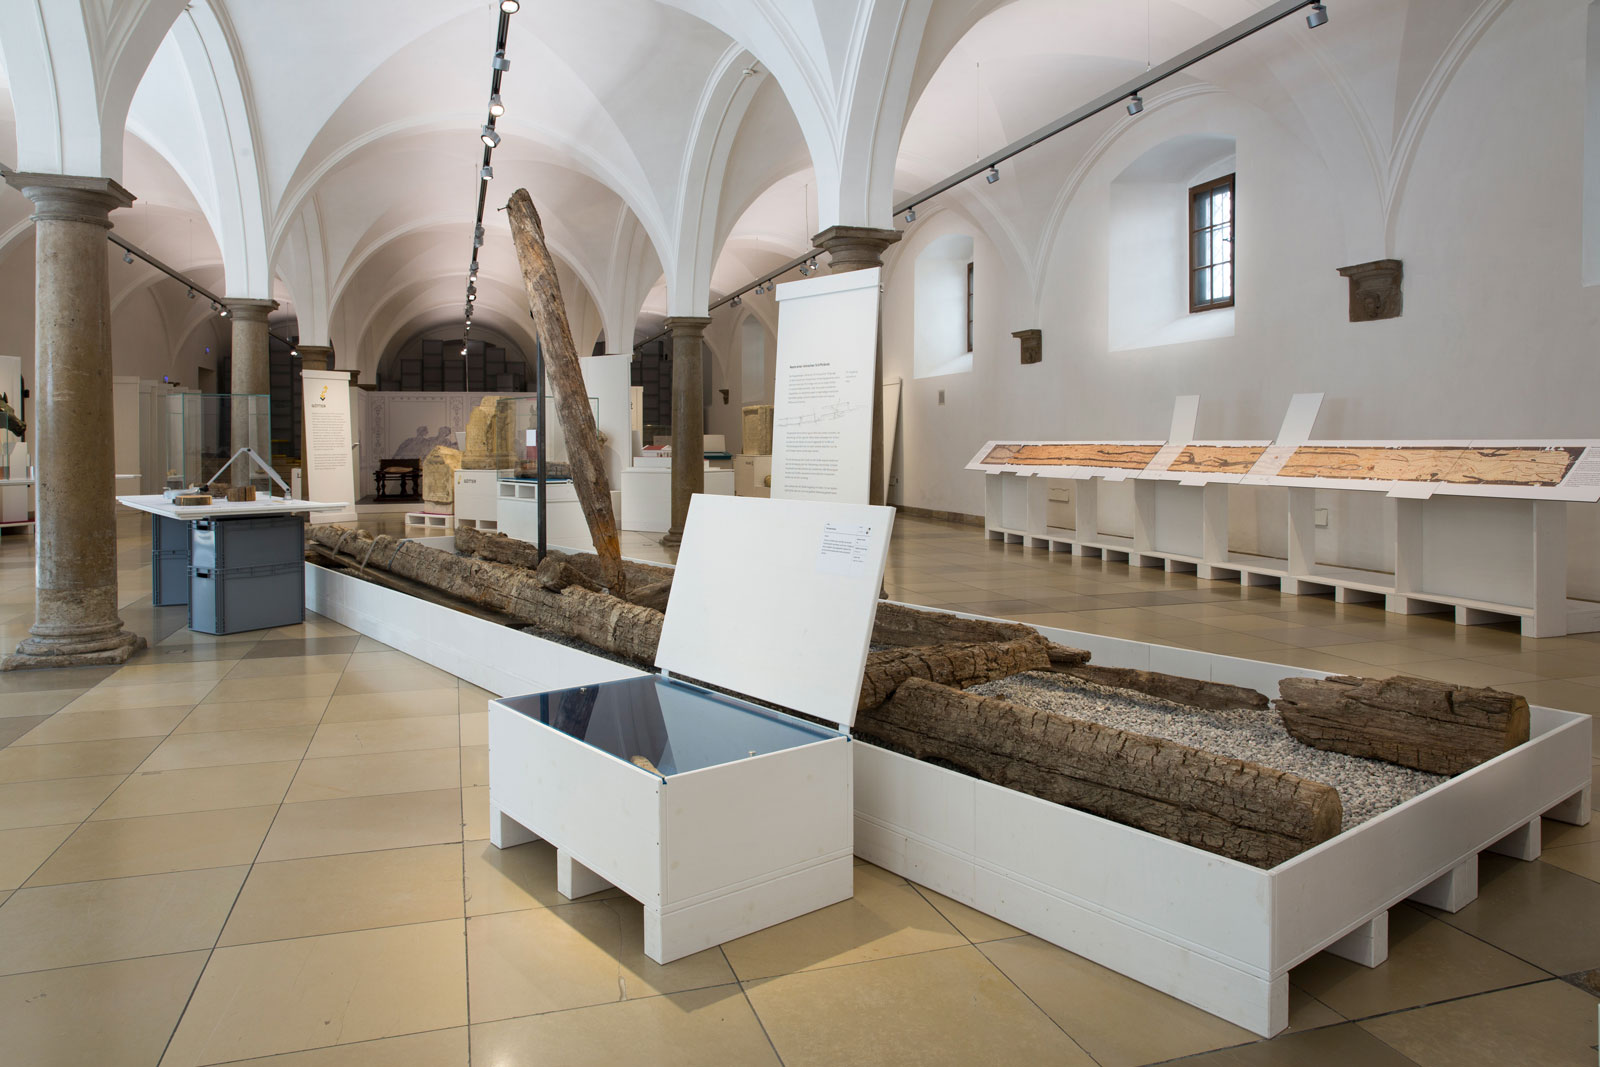 Das Referenzbild für Ausstellungsgestaltung aus der Interimsausstellung „Römerlager – Das Römische Augsburg in Kisten“ zeigt eine Exponatpräsentation in einer Vitrinenkiste.